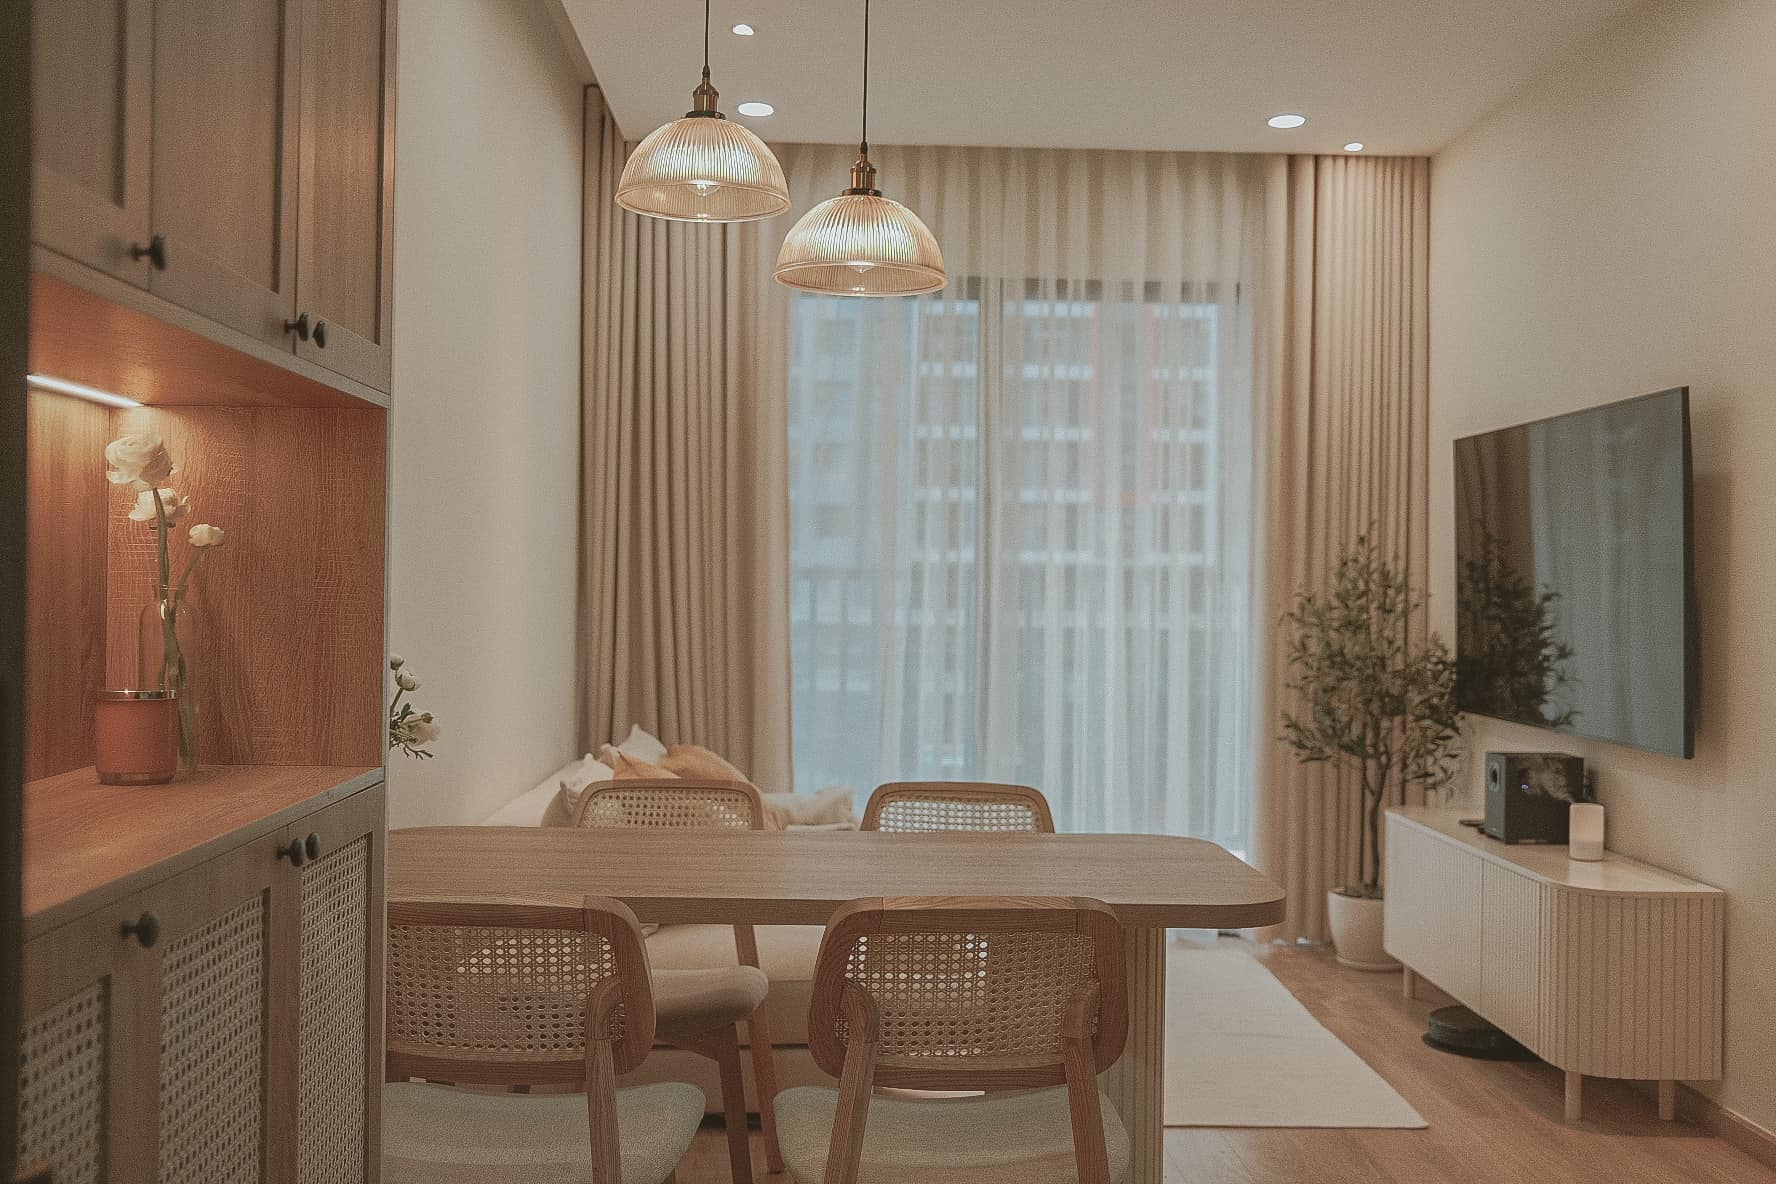 Vợ chồng trẻ Sài Gòn thiết kế căn hộ riêng chưa tới 70m² kiểu vintage chỉ toàn đồ cơ bản, ngắm mới thấy tinh tế trong từng chi tiết nhỏ - Ảnh 3.